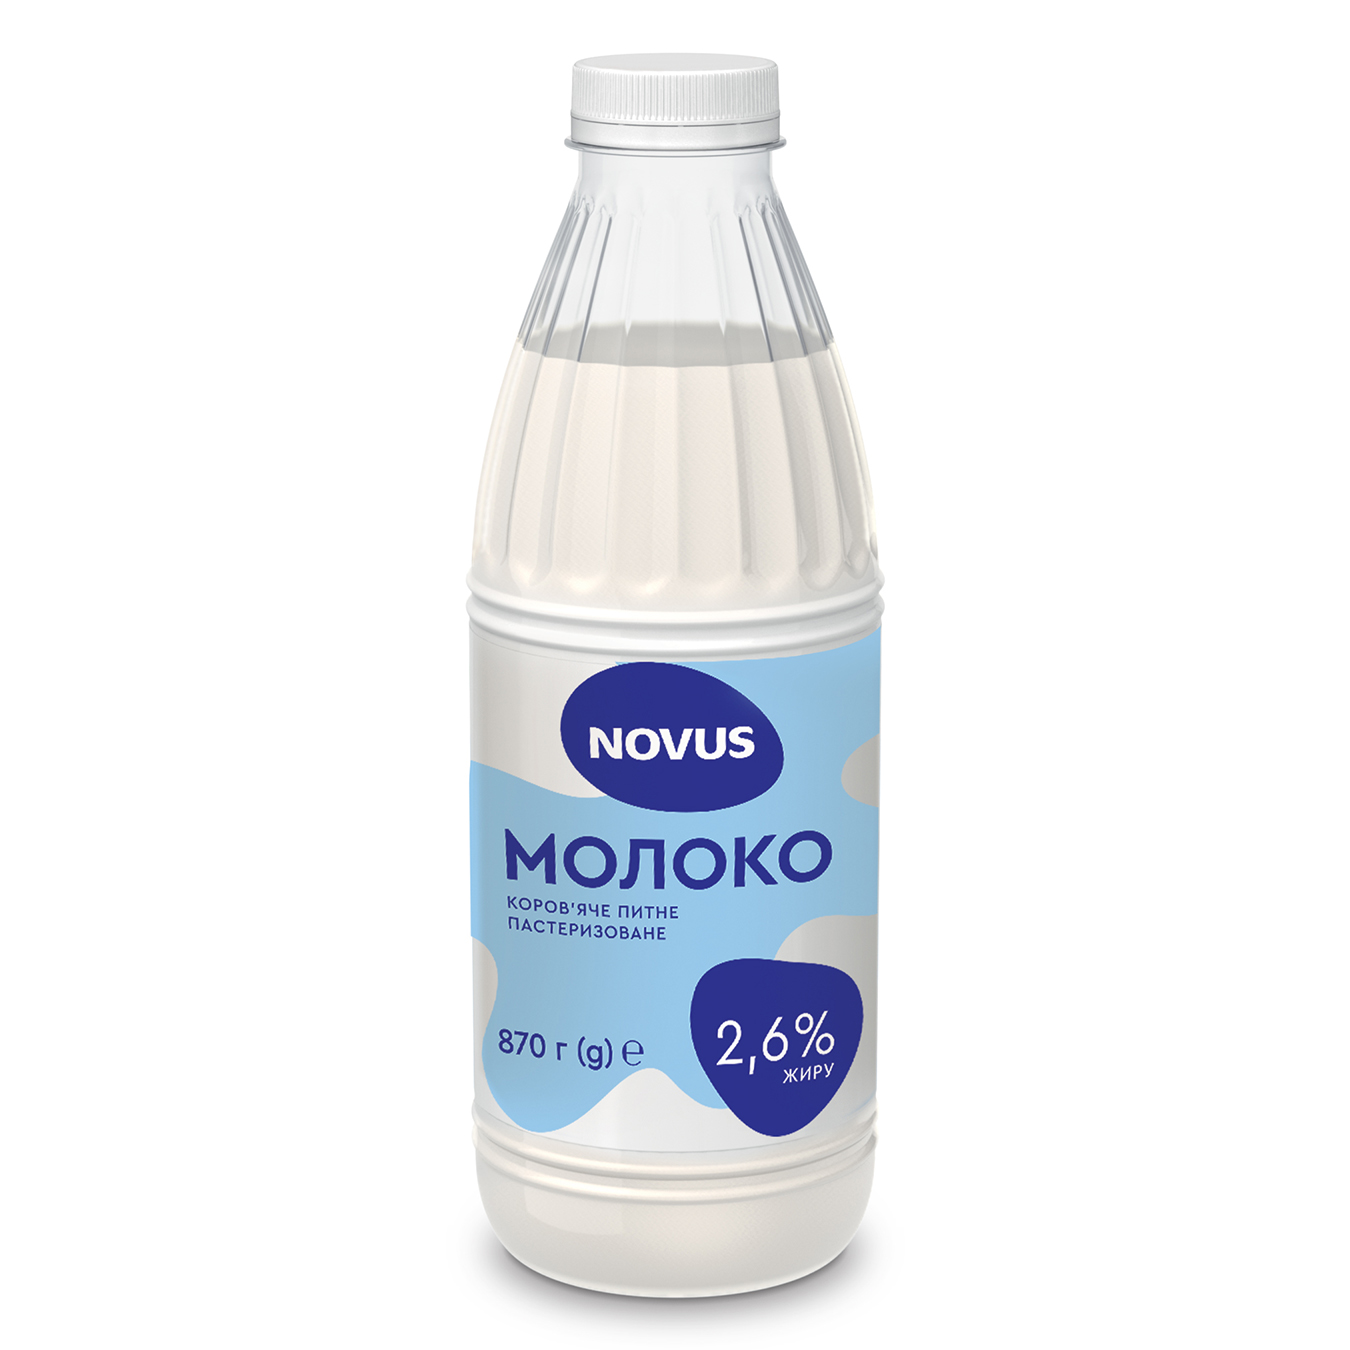 Молоко NOVUS коров'яче пастеризоване 2,6% 870г